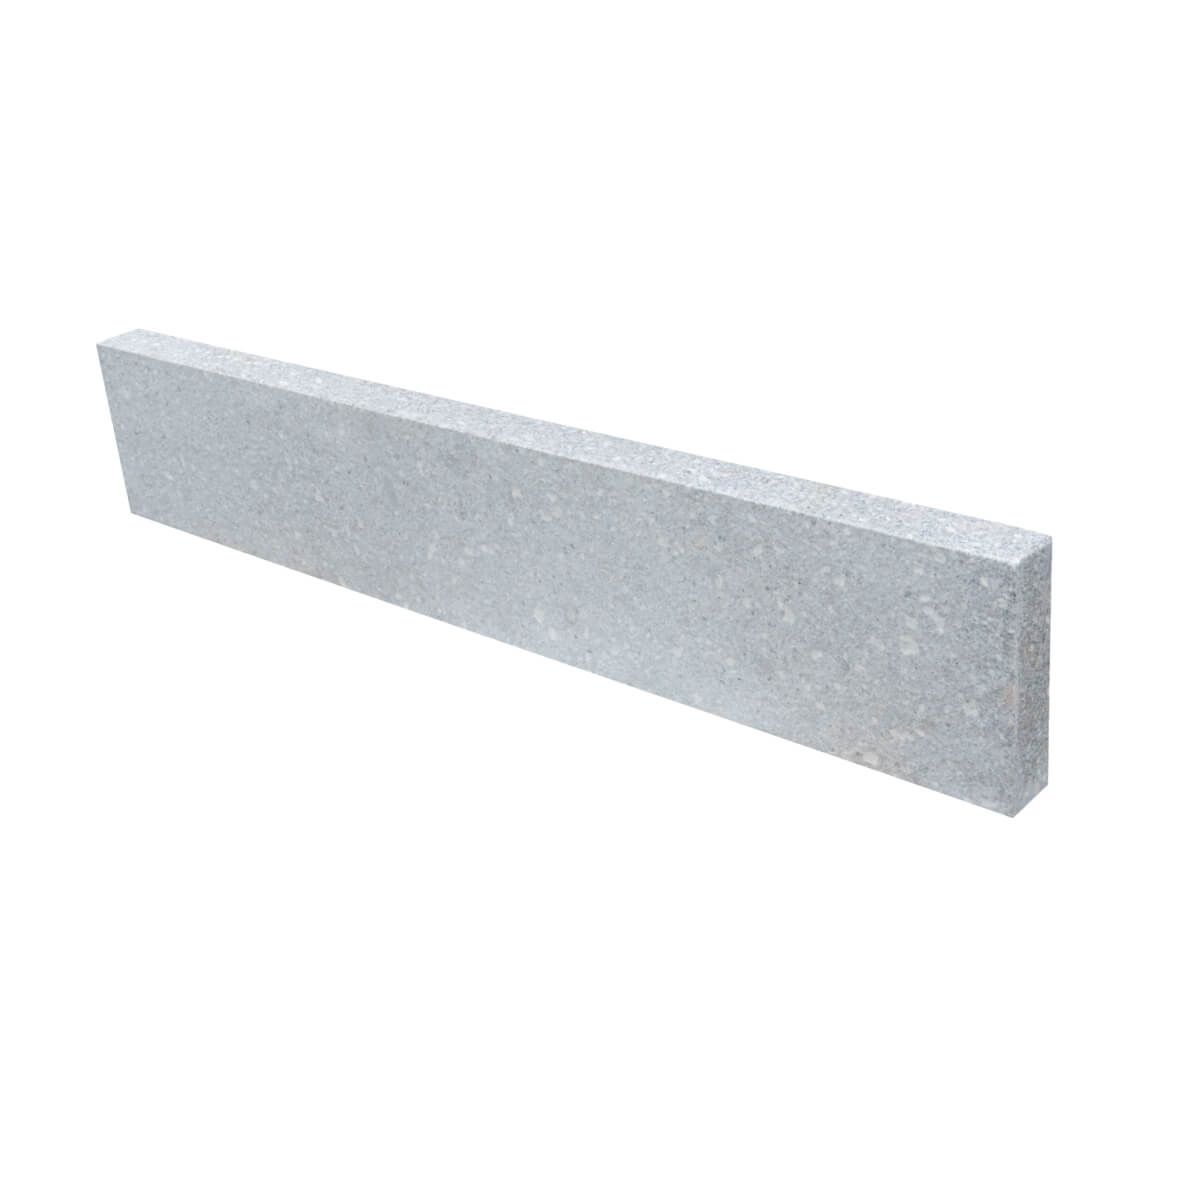 Opornik granitowy / obrzeża ogrodowe Fusheng Grey płomieniowany 100x6x20 cm (20 mb)